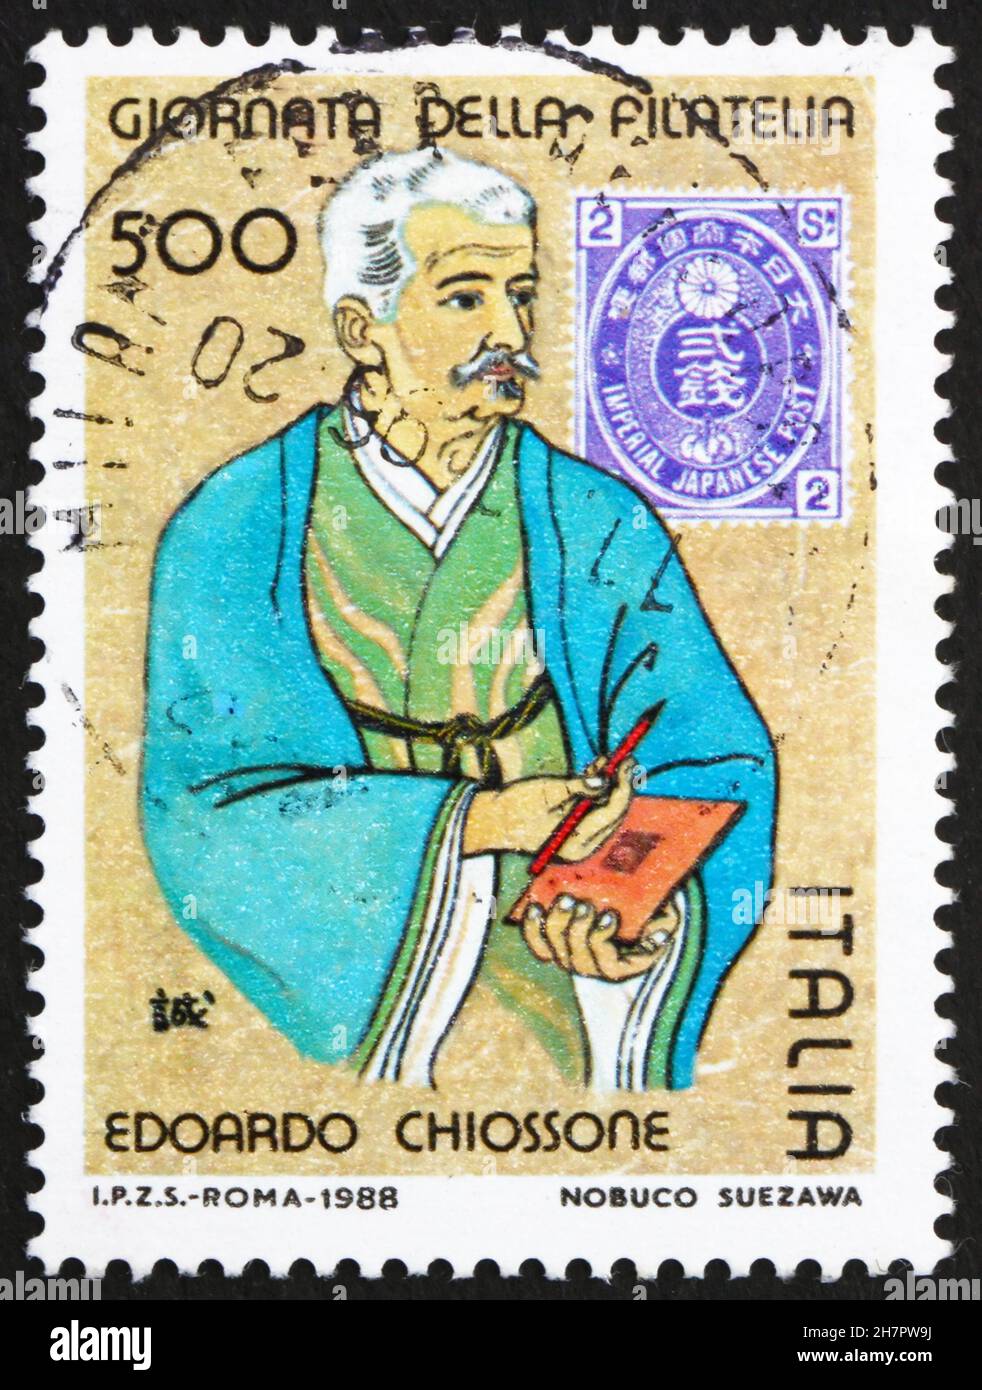 ITALIE - VERS 1989: Un timbre imprimé en Italie montre le Japon Timbres et le concepteur de timbres Edoardo Chiossone, vers 1989 Banque D'Images